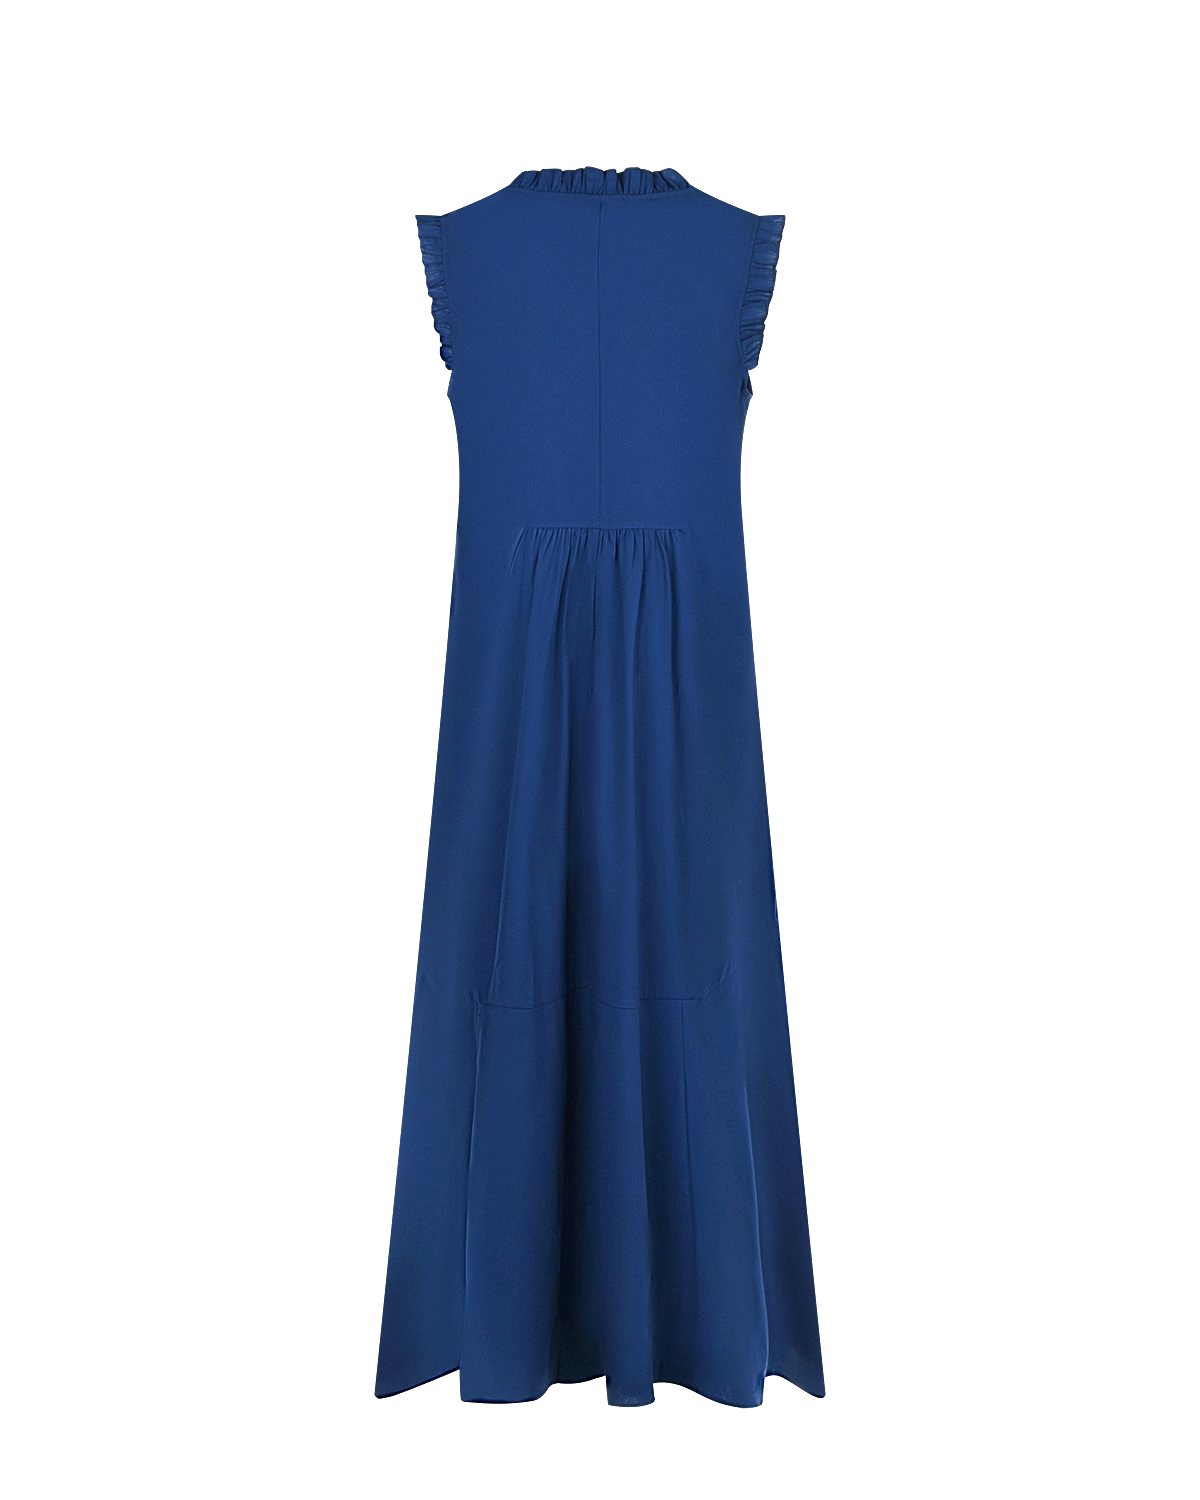 Синее платье с рюшами Attesa, размер 38, цвет синий - фото 5